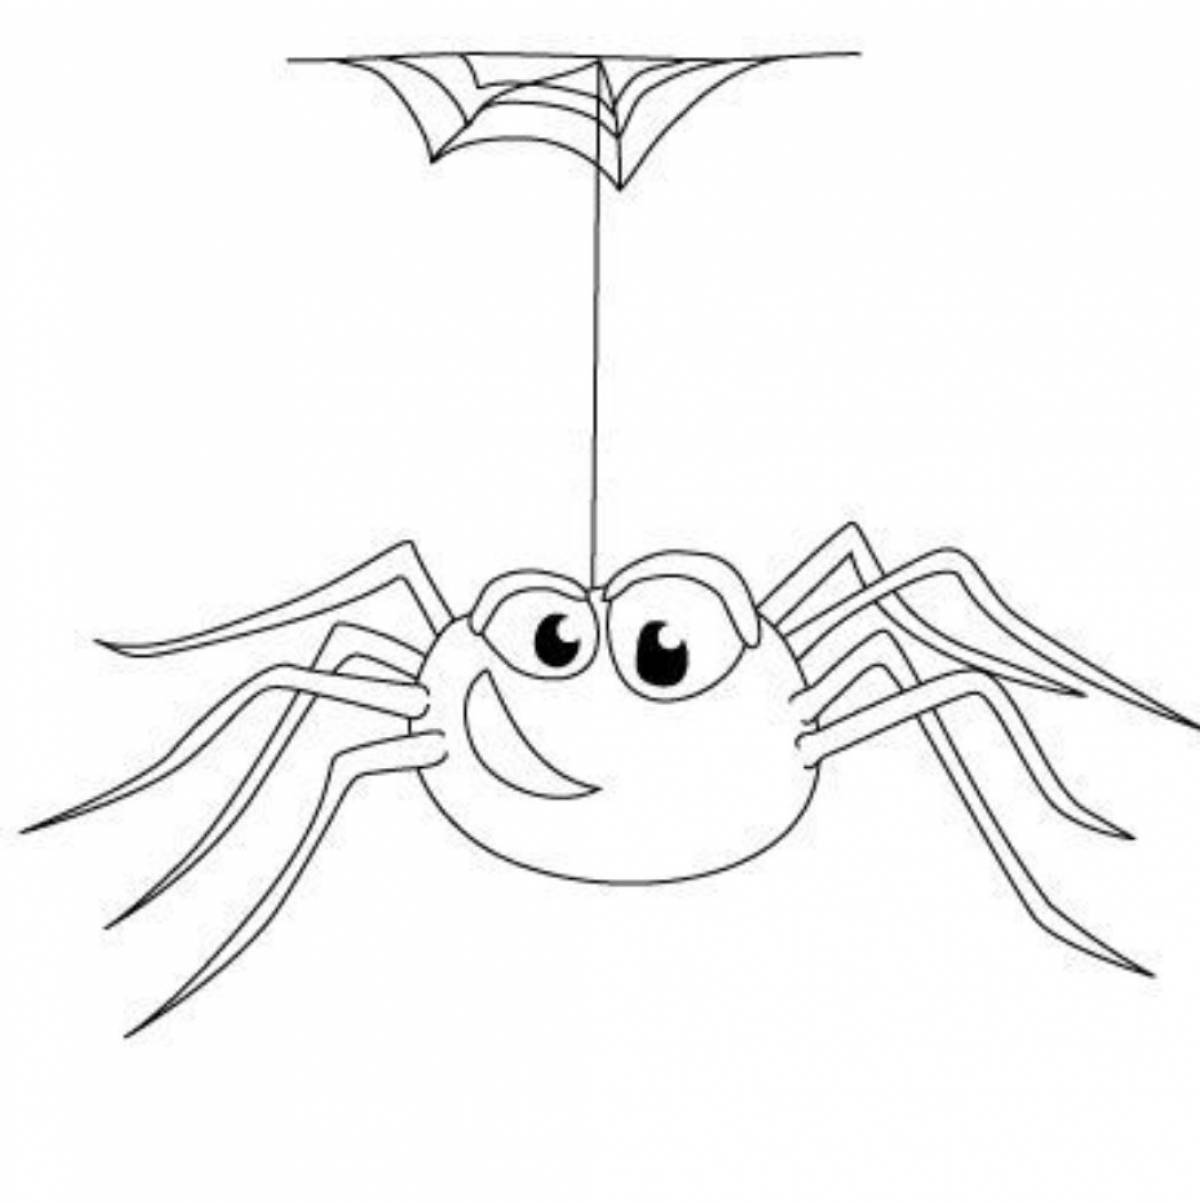 Привлекательная страница раскраски пауков для учащихся